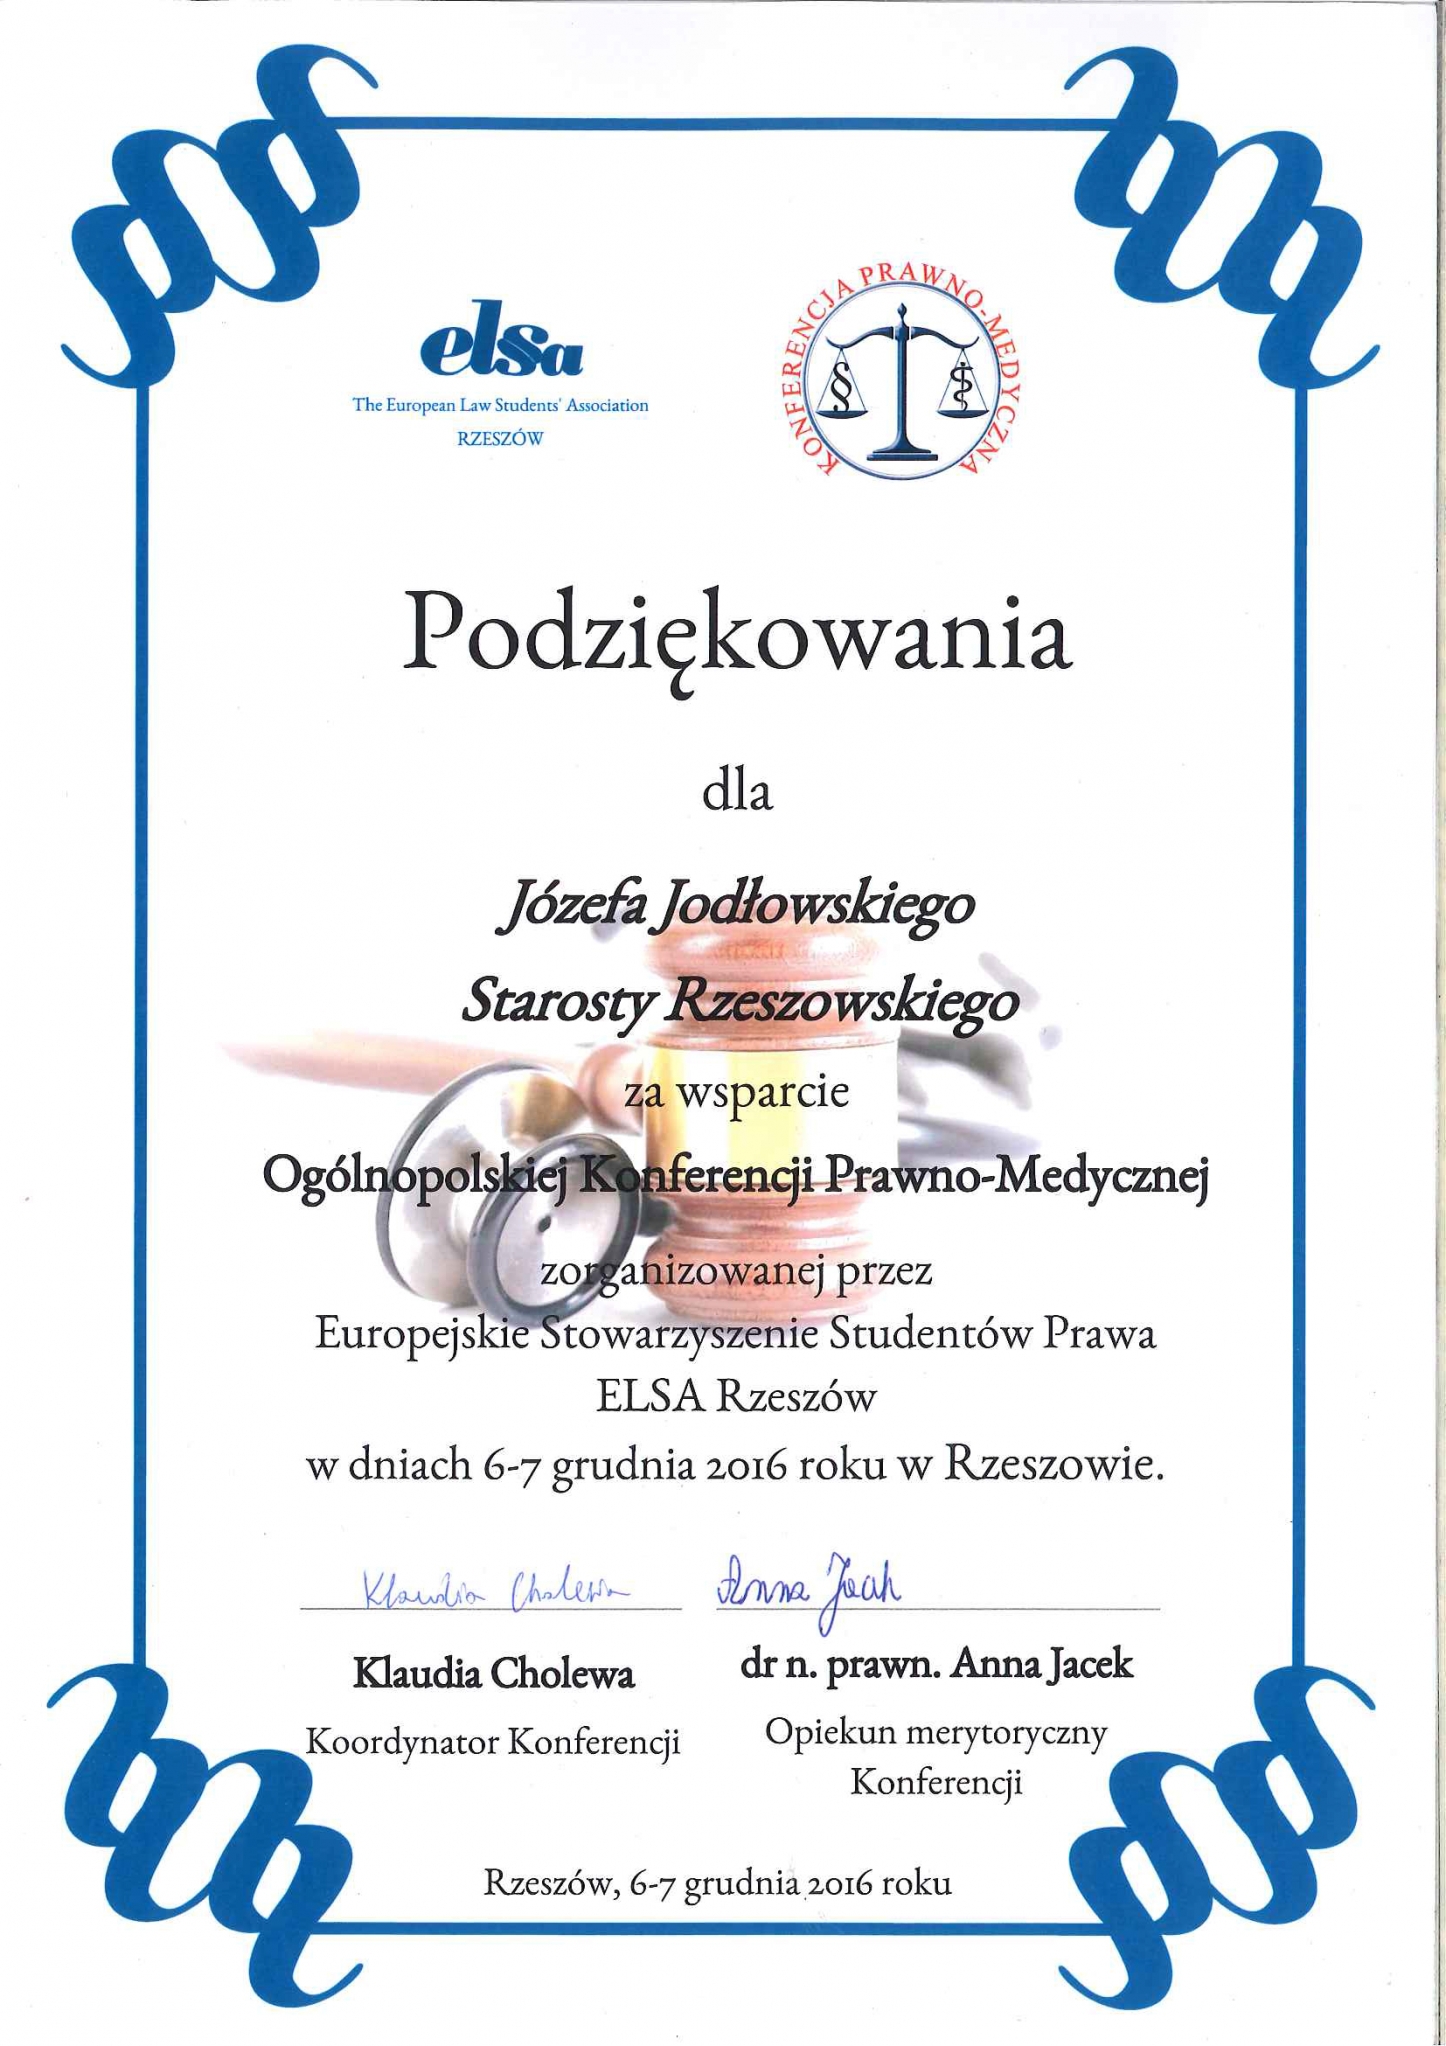 https://powiat.rzeszowski.pl/blog/2020/11/25/wyroznienia-i-wspolpraca-z-organizacjami/201612131346-jpg/